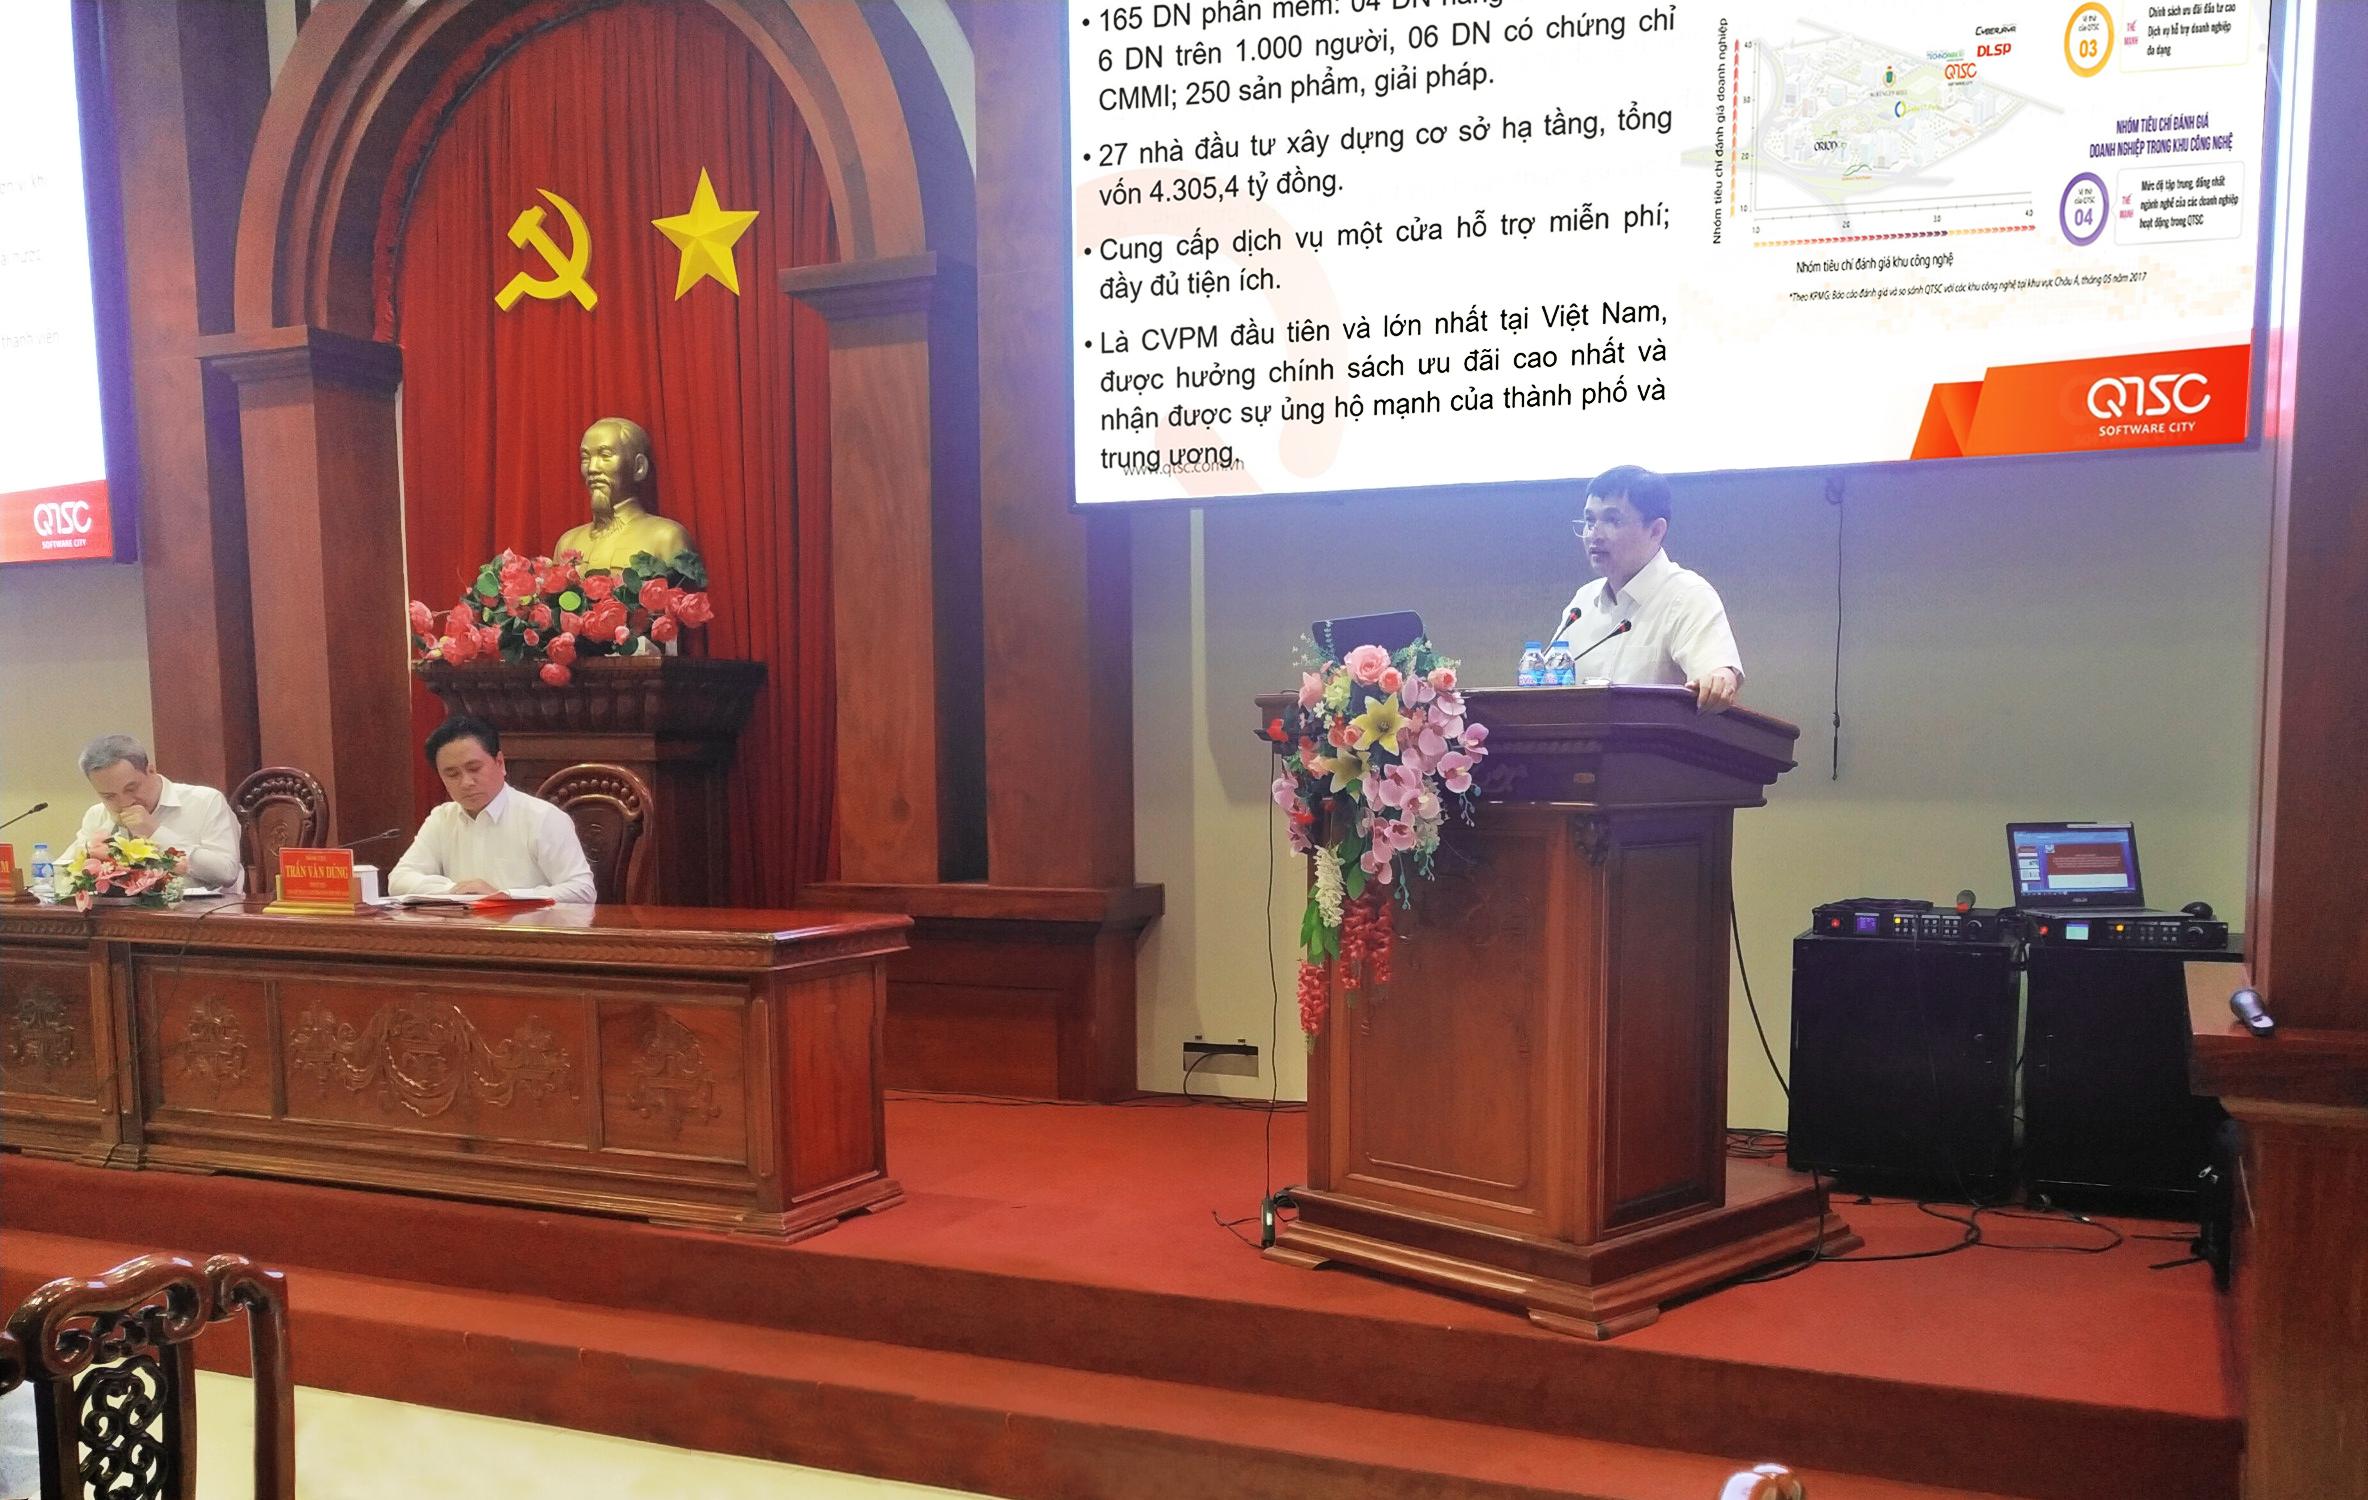 Ông Lâm Nguyễn Hải Long – Giám đốc QTSC trình bày tham luận tại Hội nghị 